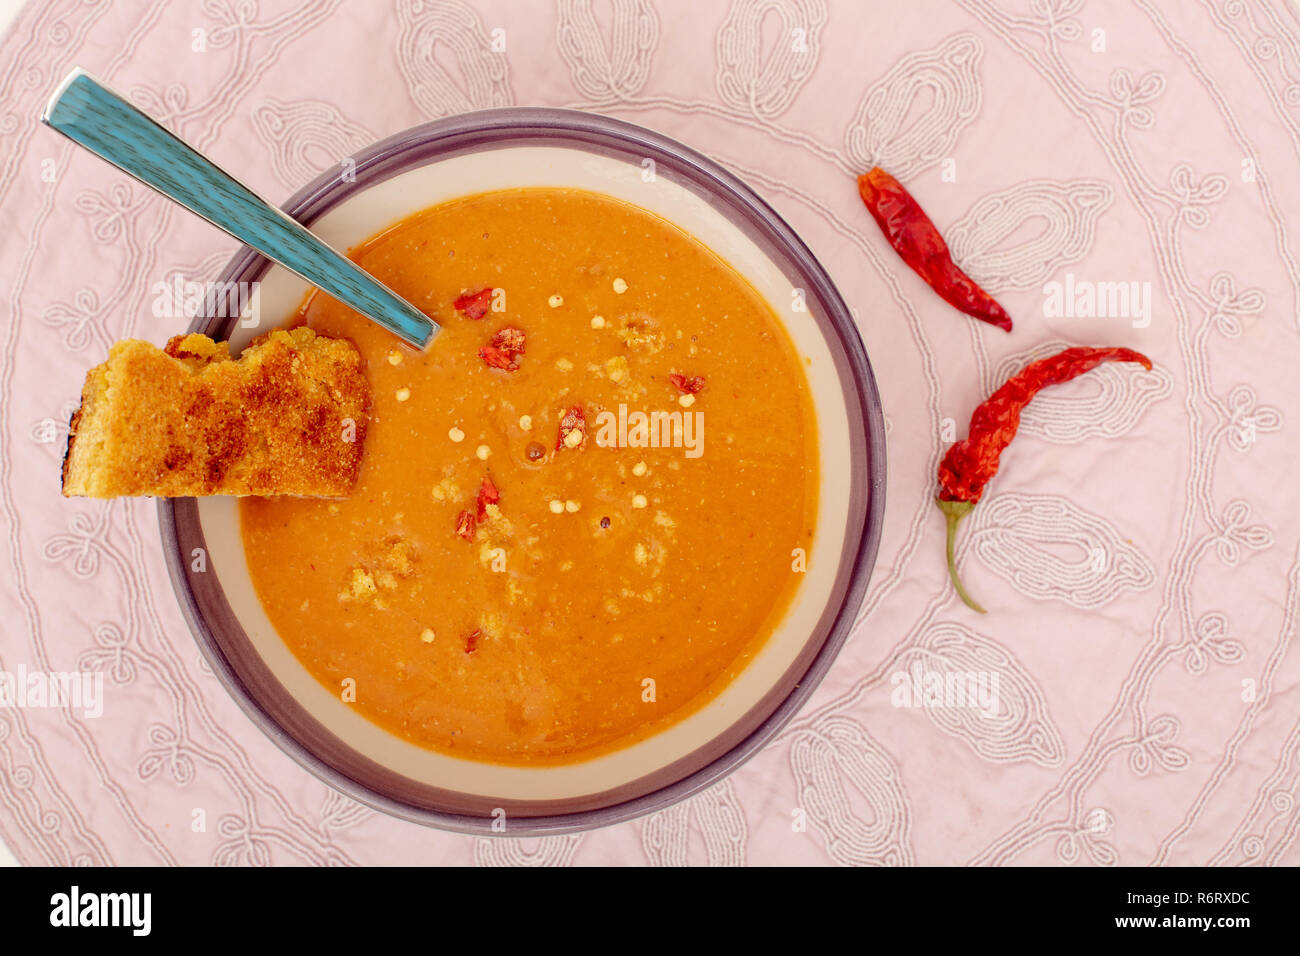 Zuppa di lenticchie nella ciotola con freschi di forno il pane di mais e red hot chili peppers sul tessuto di vista da sopra Foto Stock